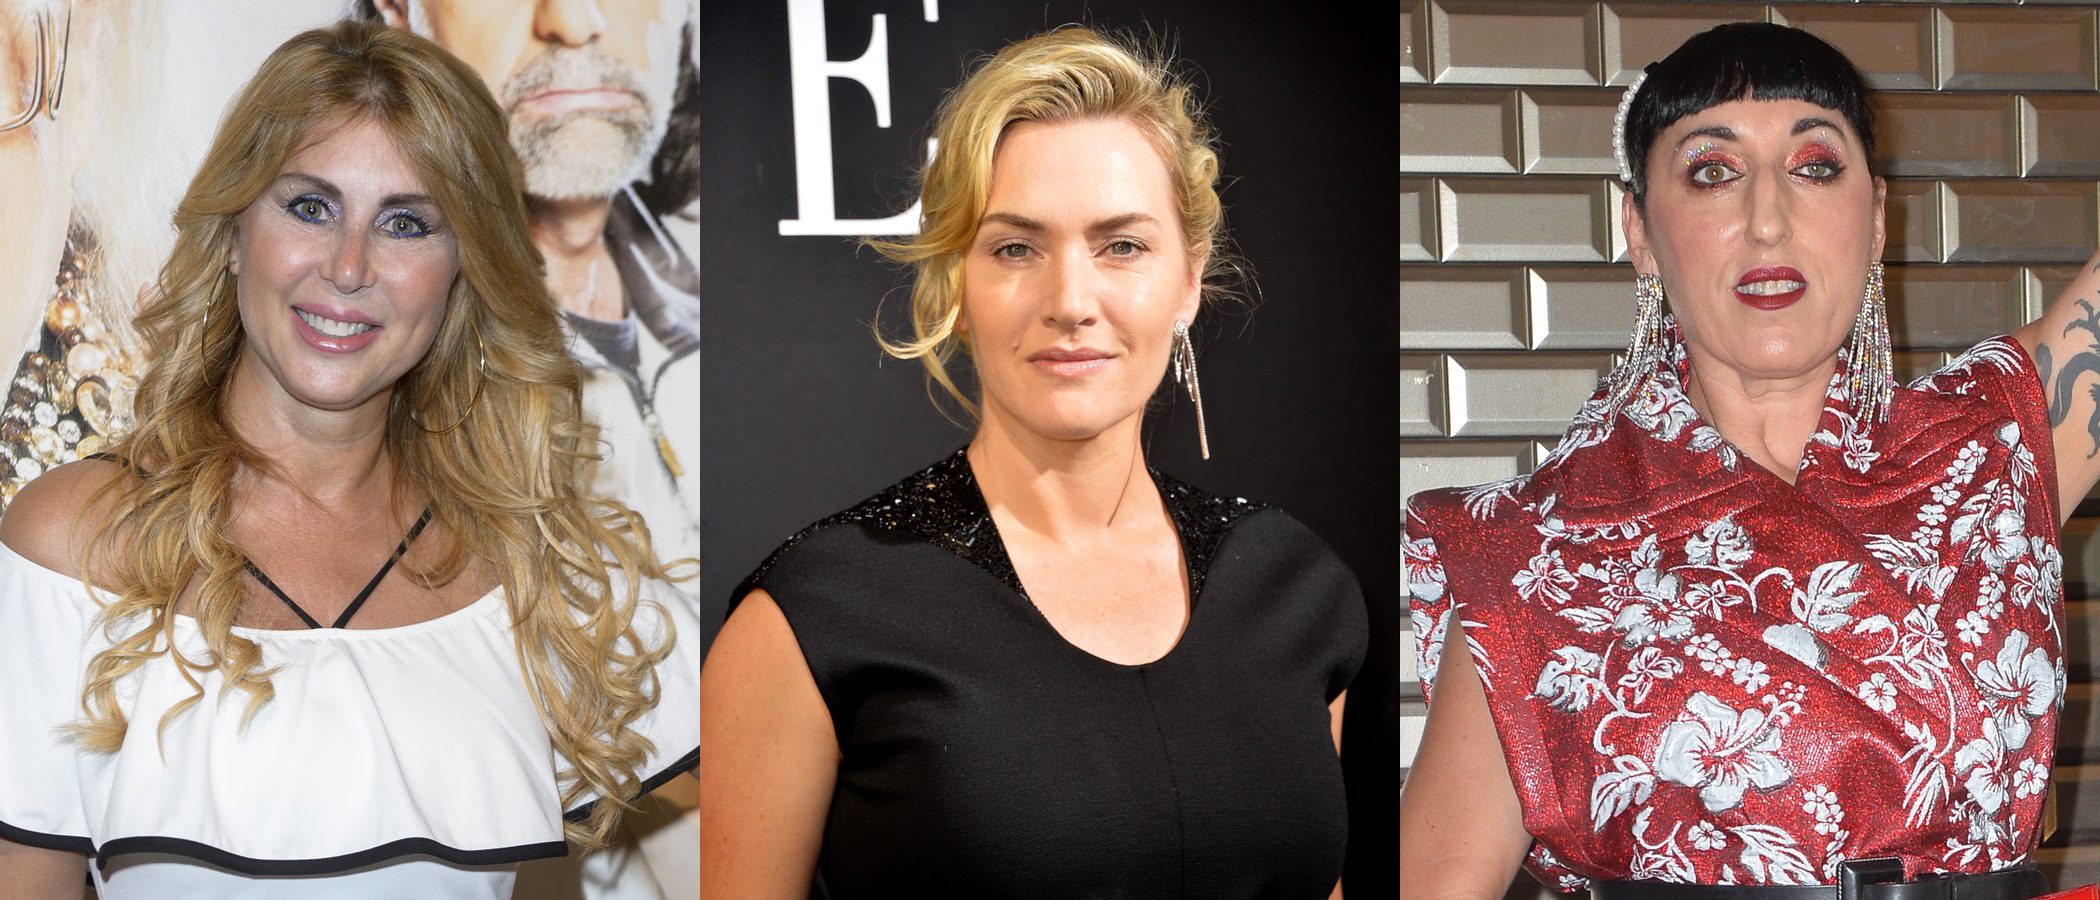 Rossy de Palma y Kate Winslet, entre los peores beauty looks de la semana